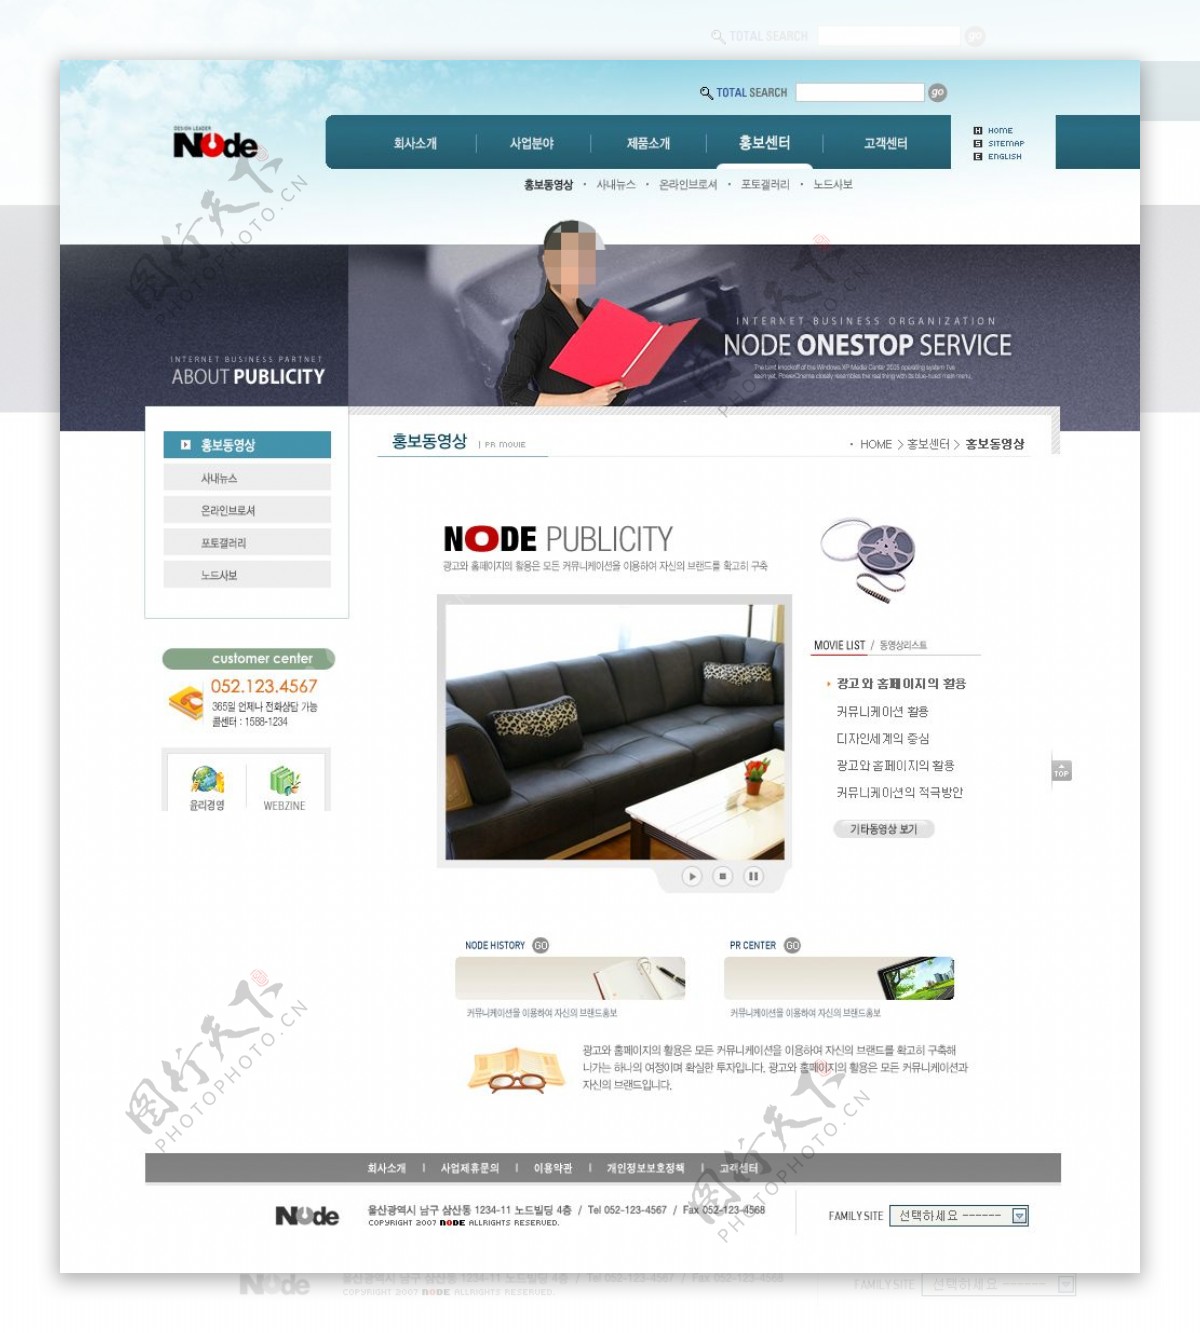 家具网页设计